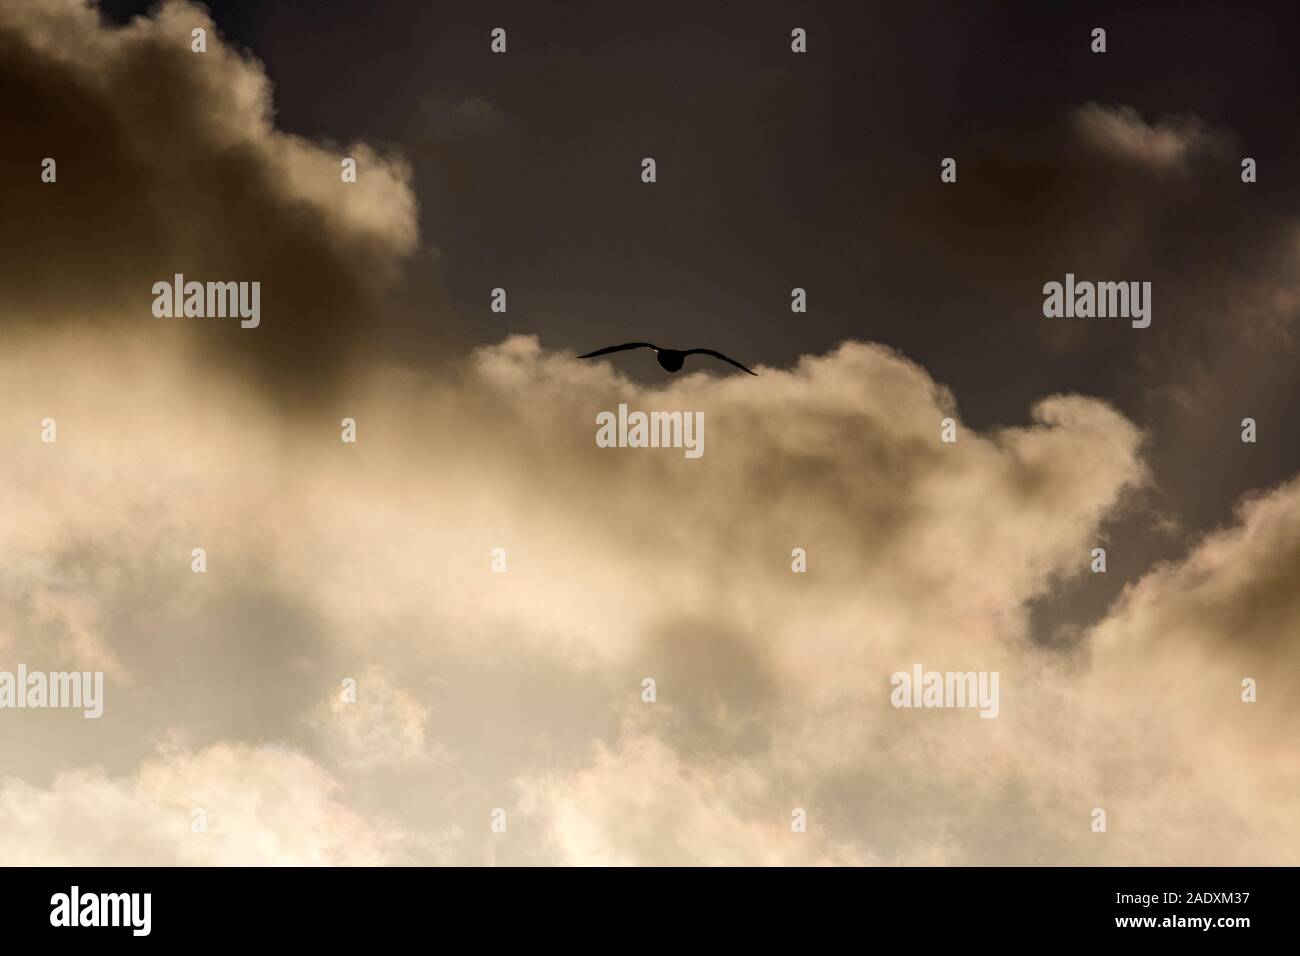 Sylt, Kampen, Moewe im Flug, Wolken, Sonne, dramatisch Stock Photo